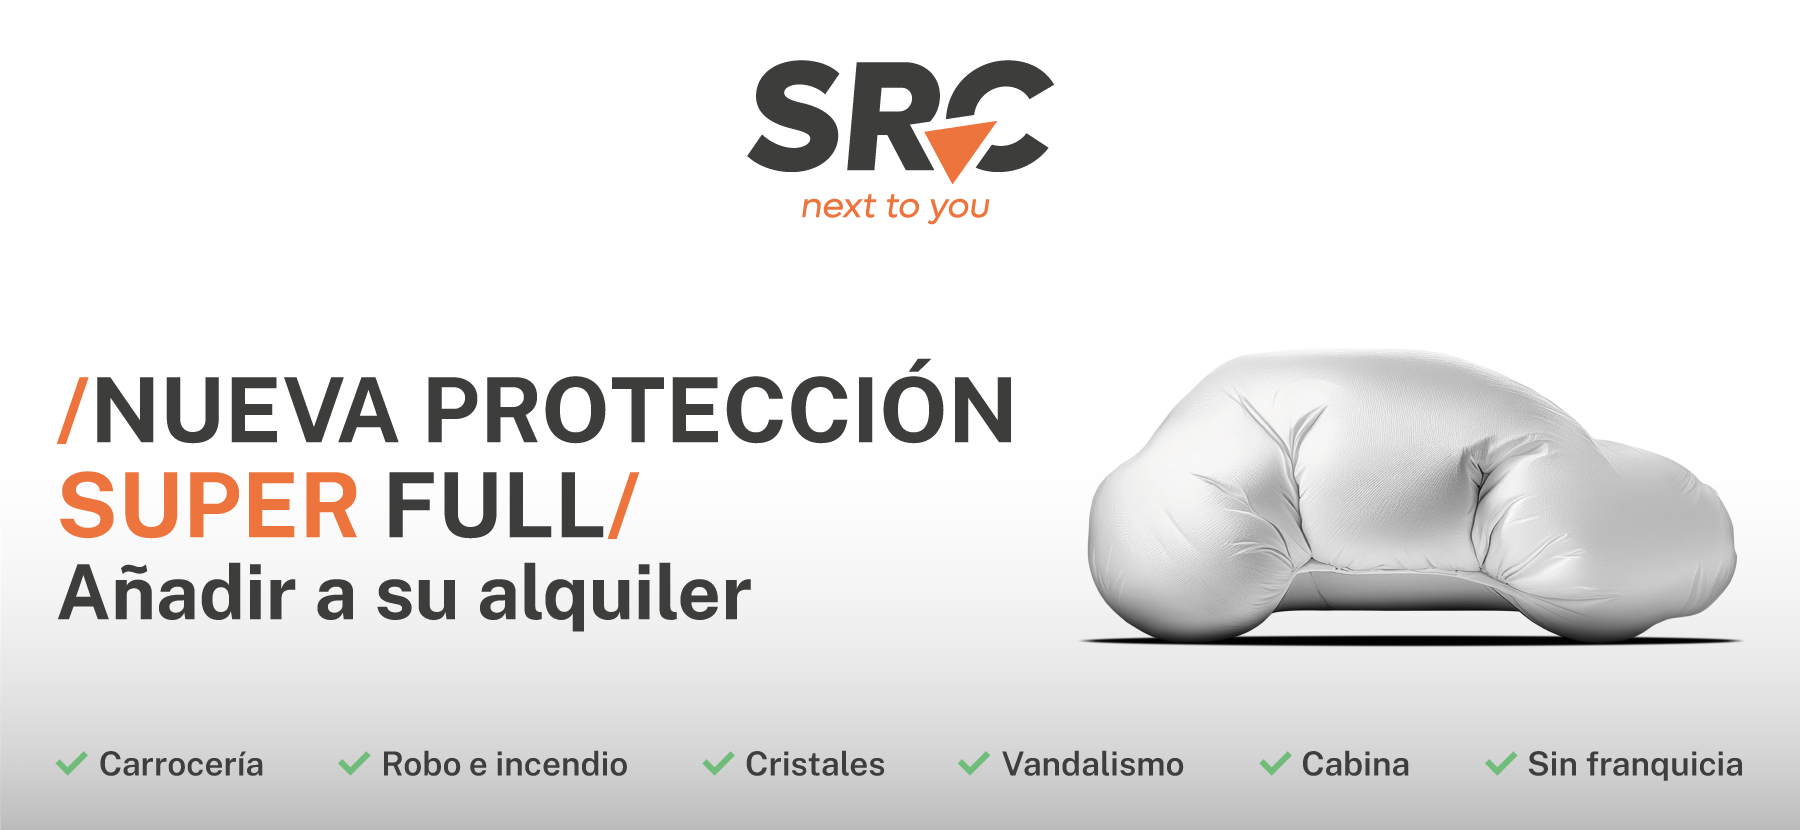 SRC_nueva proteccion super full